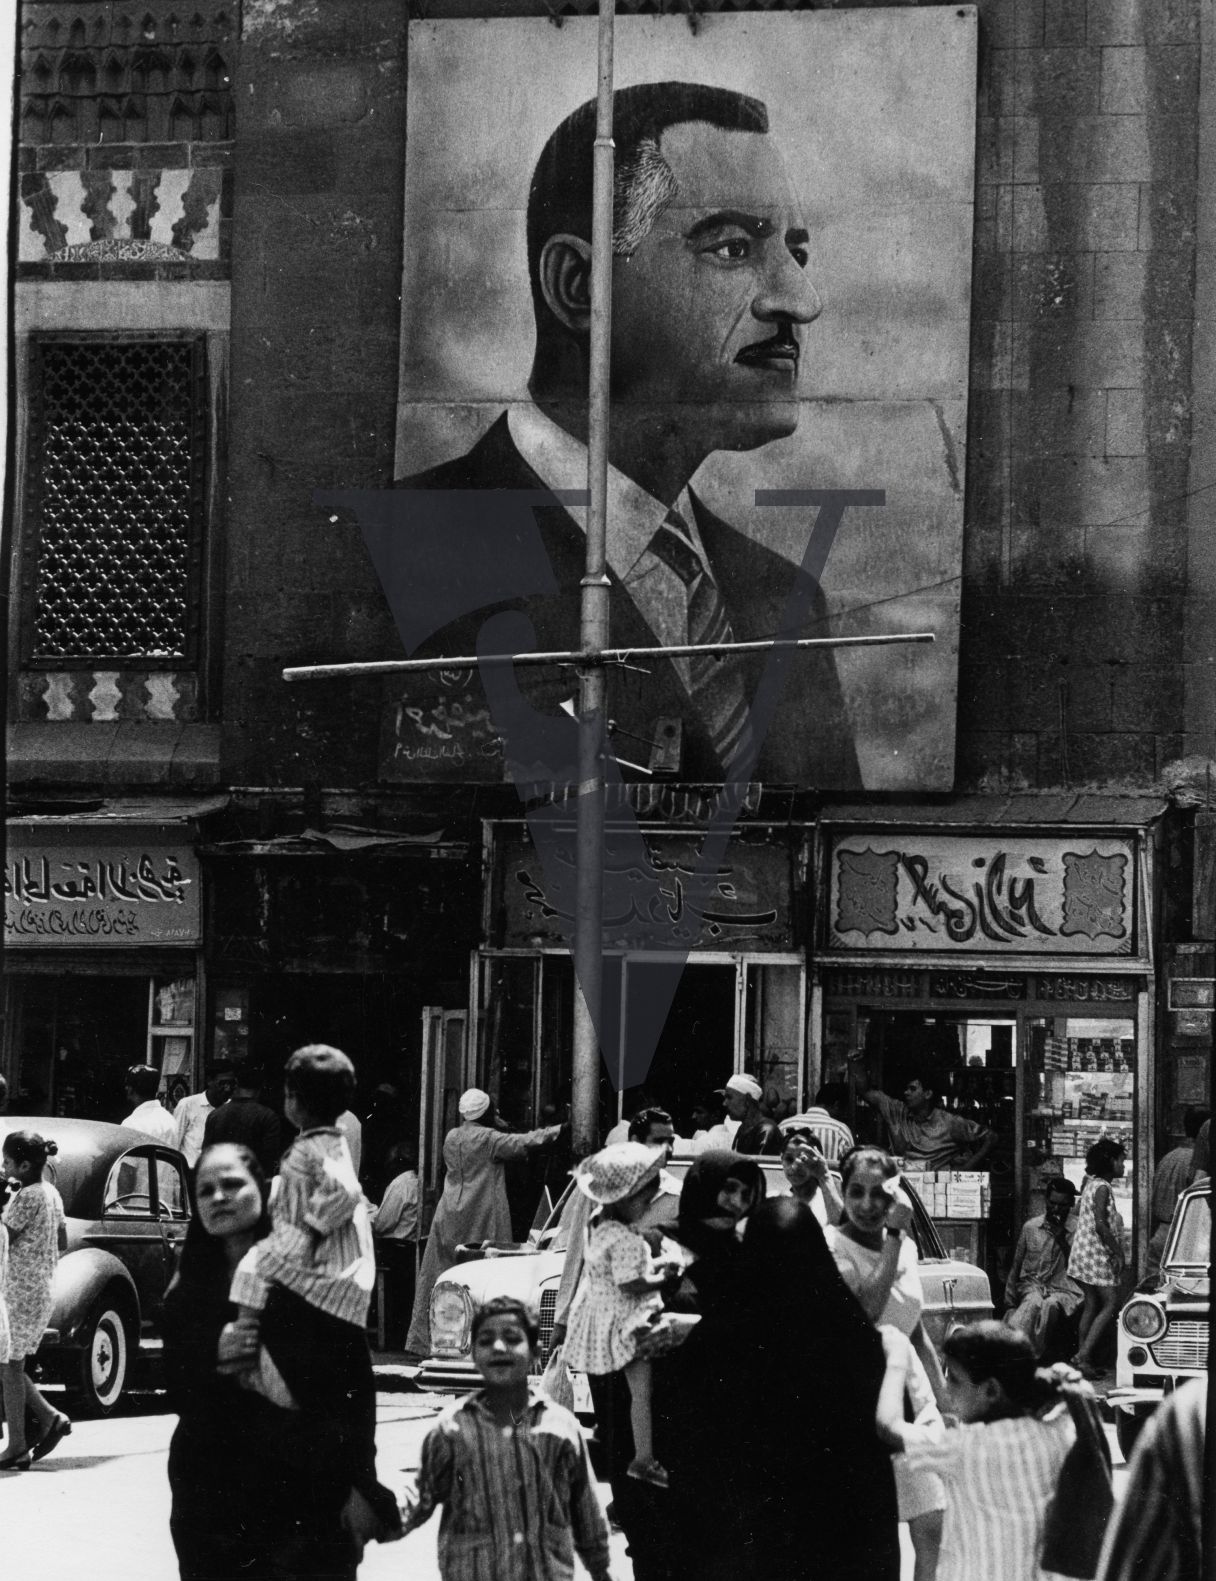 Egypt, street scene, cars, Nasser billboard.